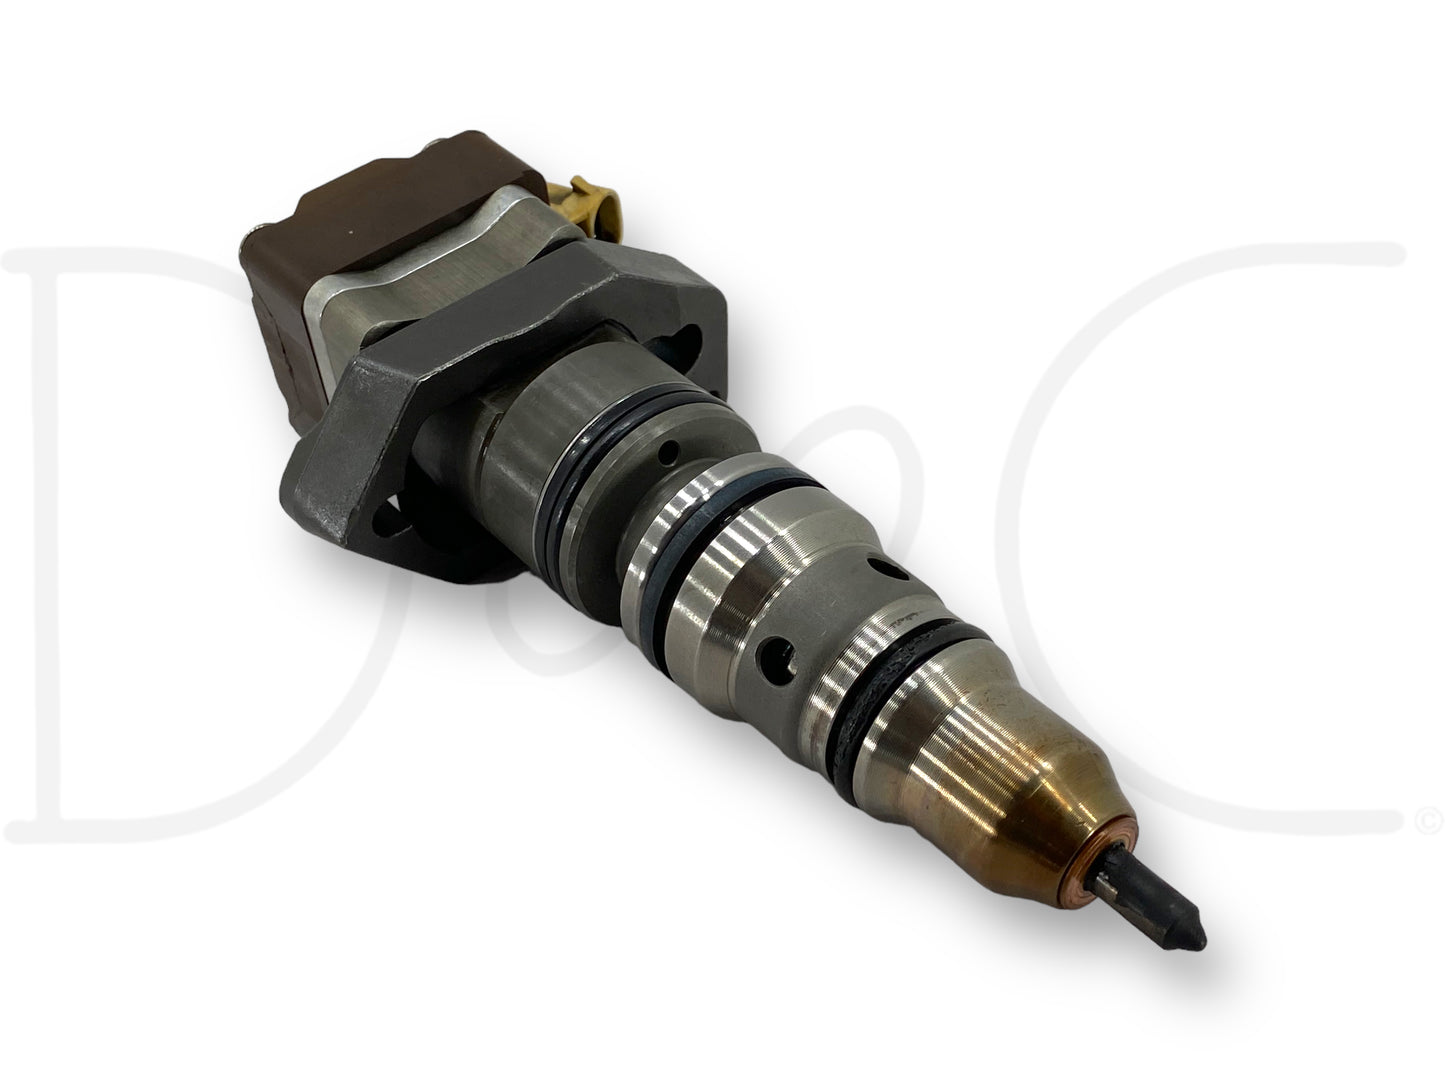 97-99 Ford F250 F350 7.3 7.3L Diesel Ab Injector Set Fuel Injectors Ab1822803C1